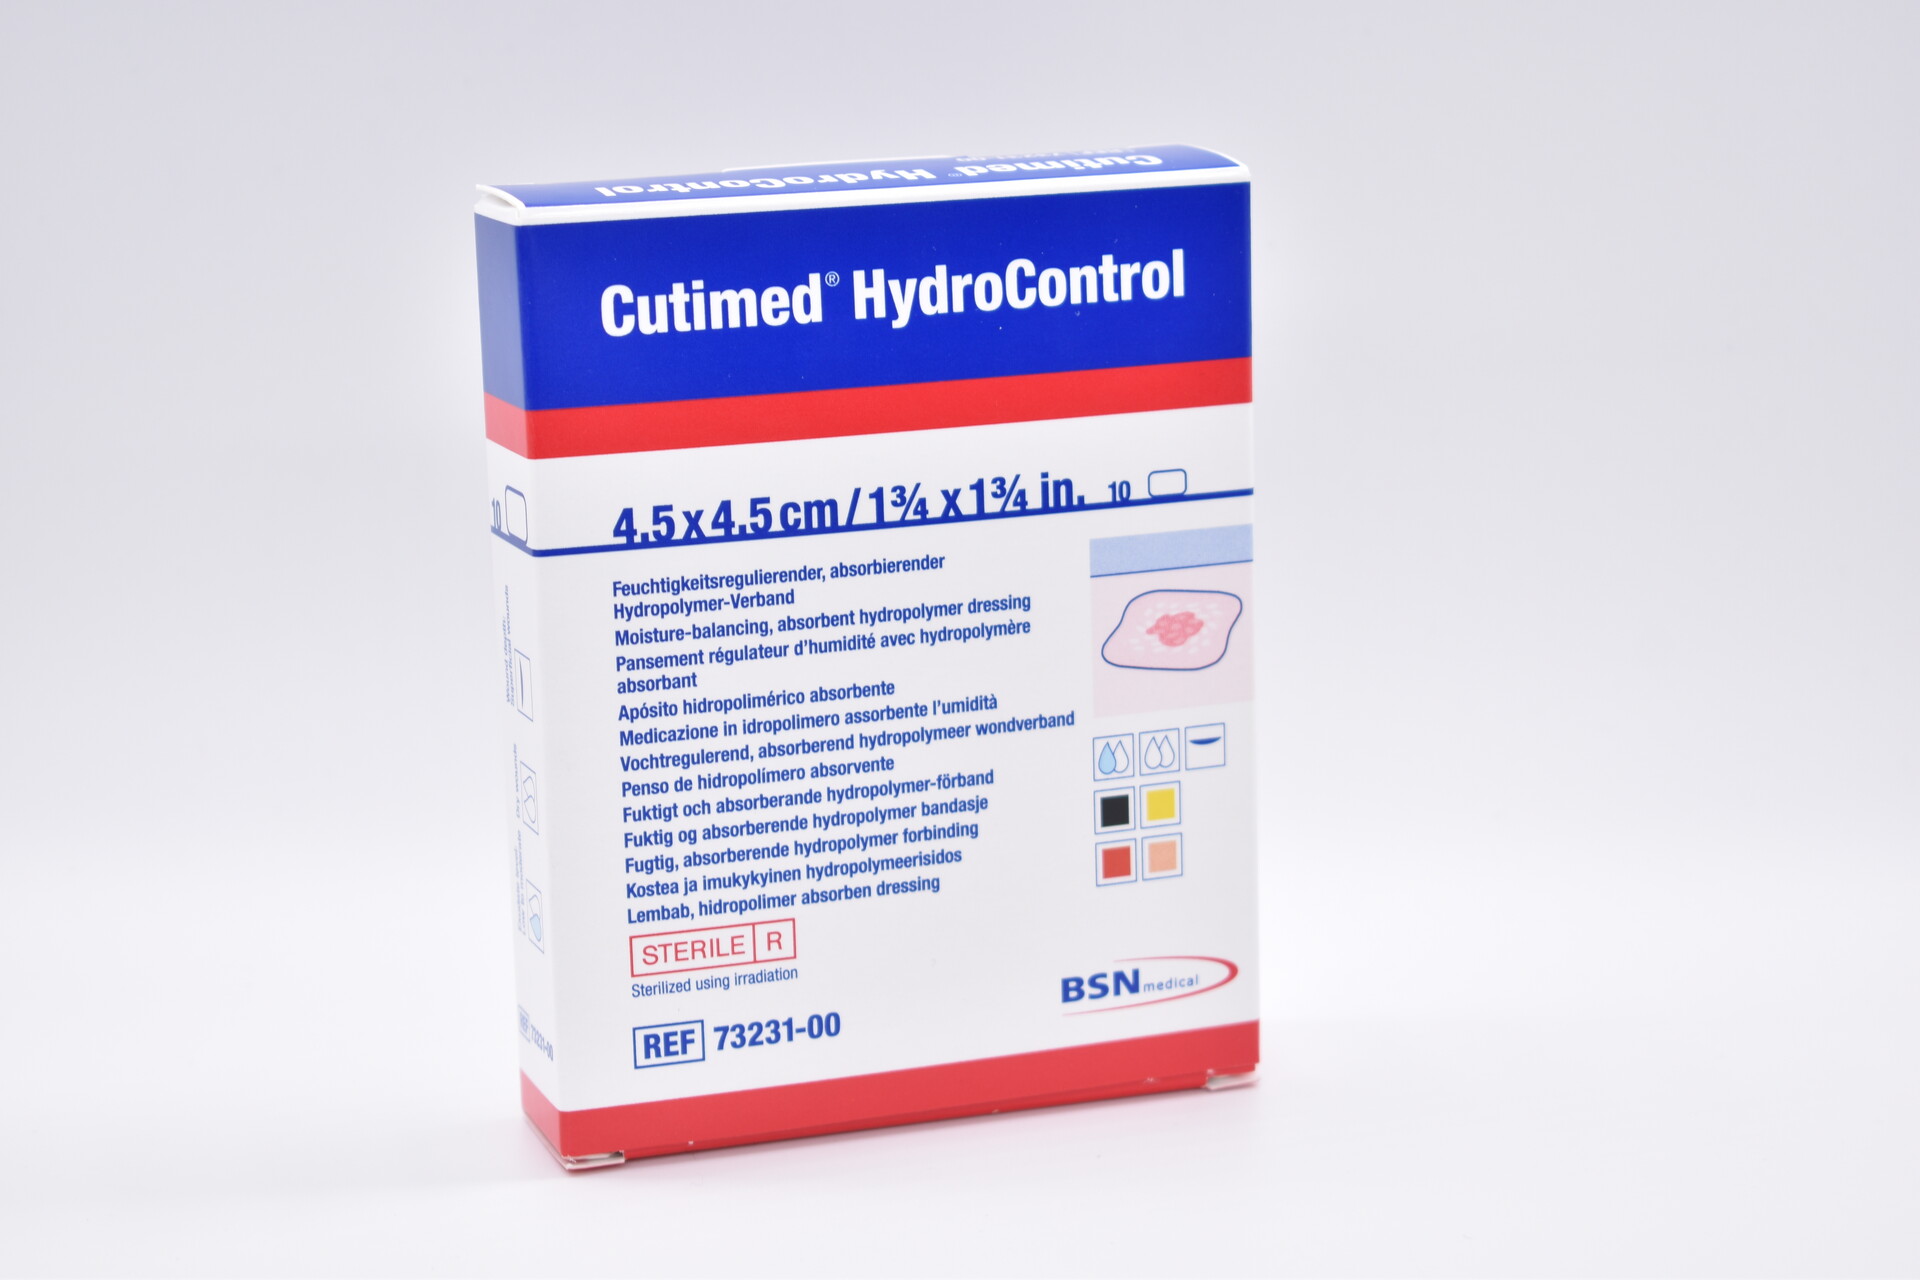 Cutimed® HydroControl